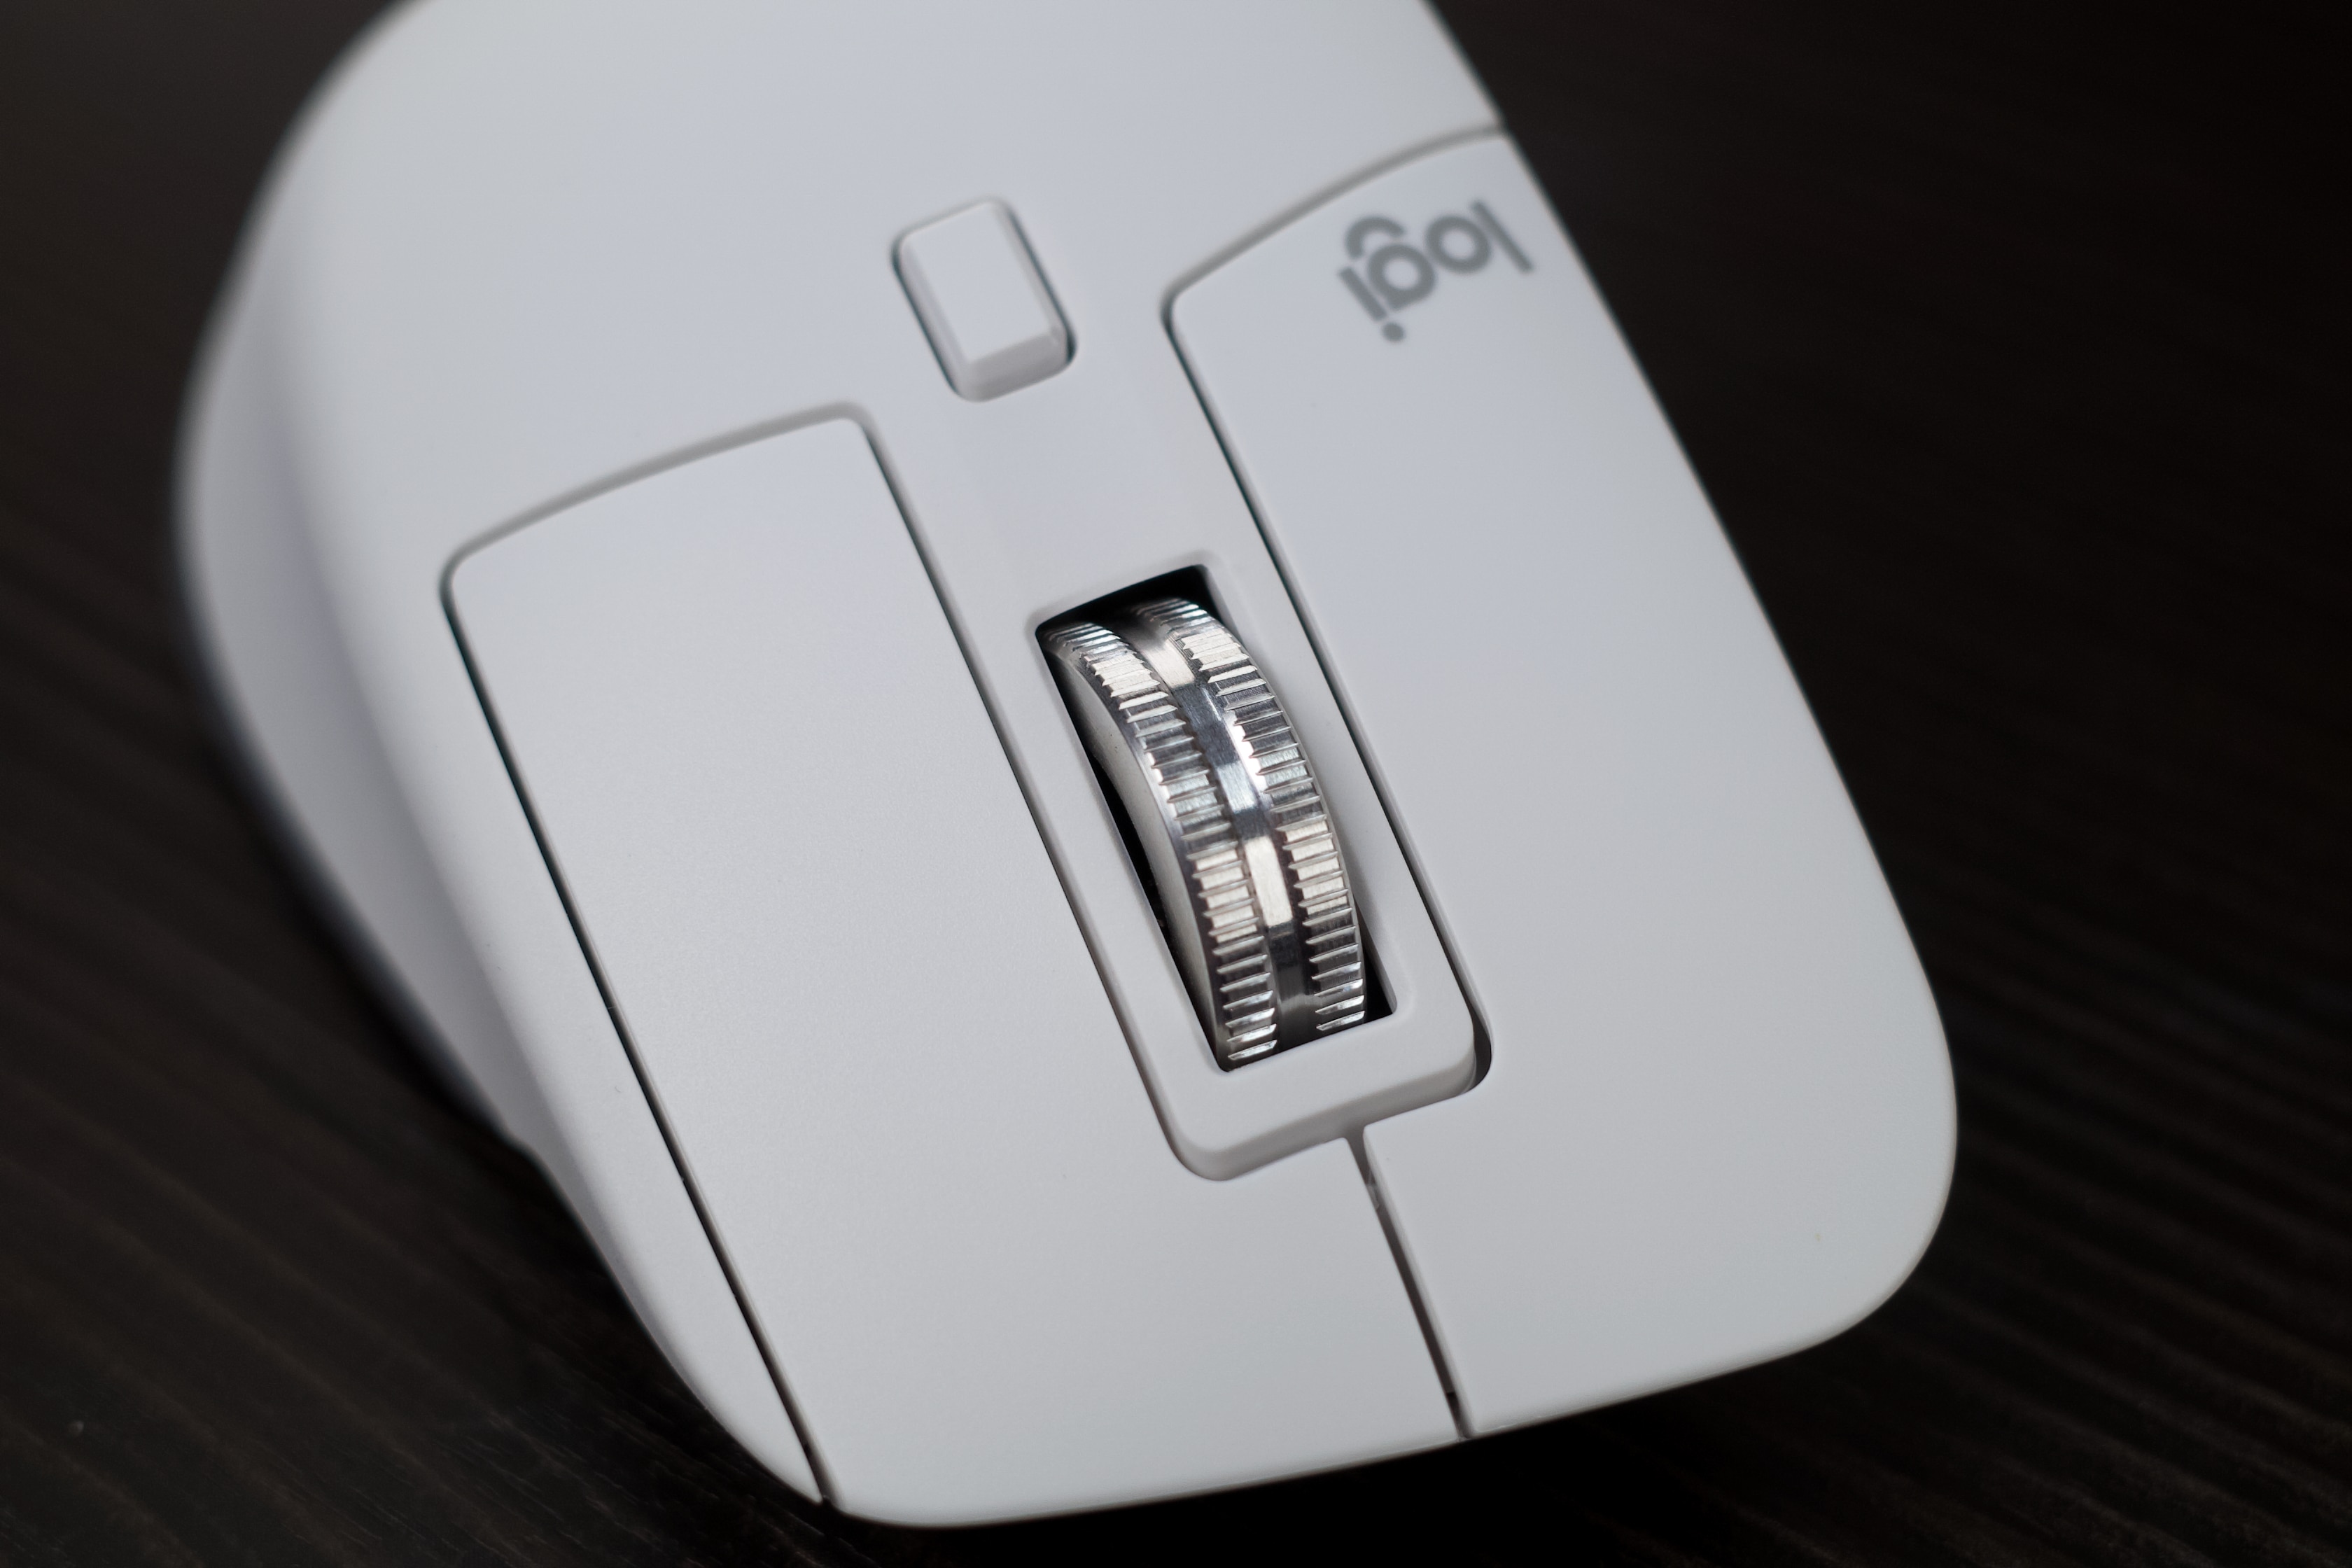 Trên tay Logitech MX Master 3S: Màu trắng trang nhã, nút bấm rất êm, độ nhạy cao hơn và chỉnh được